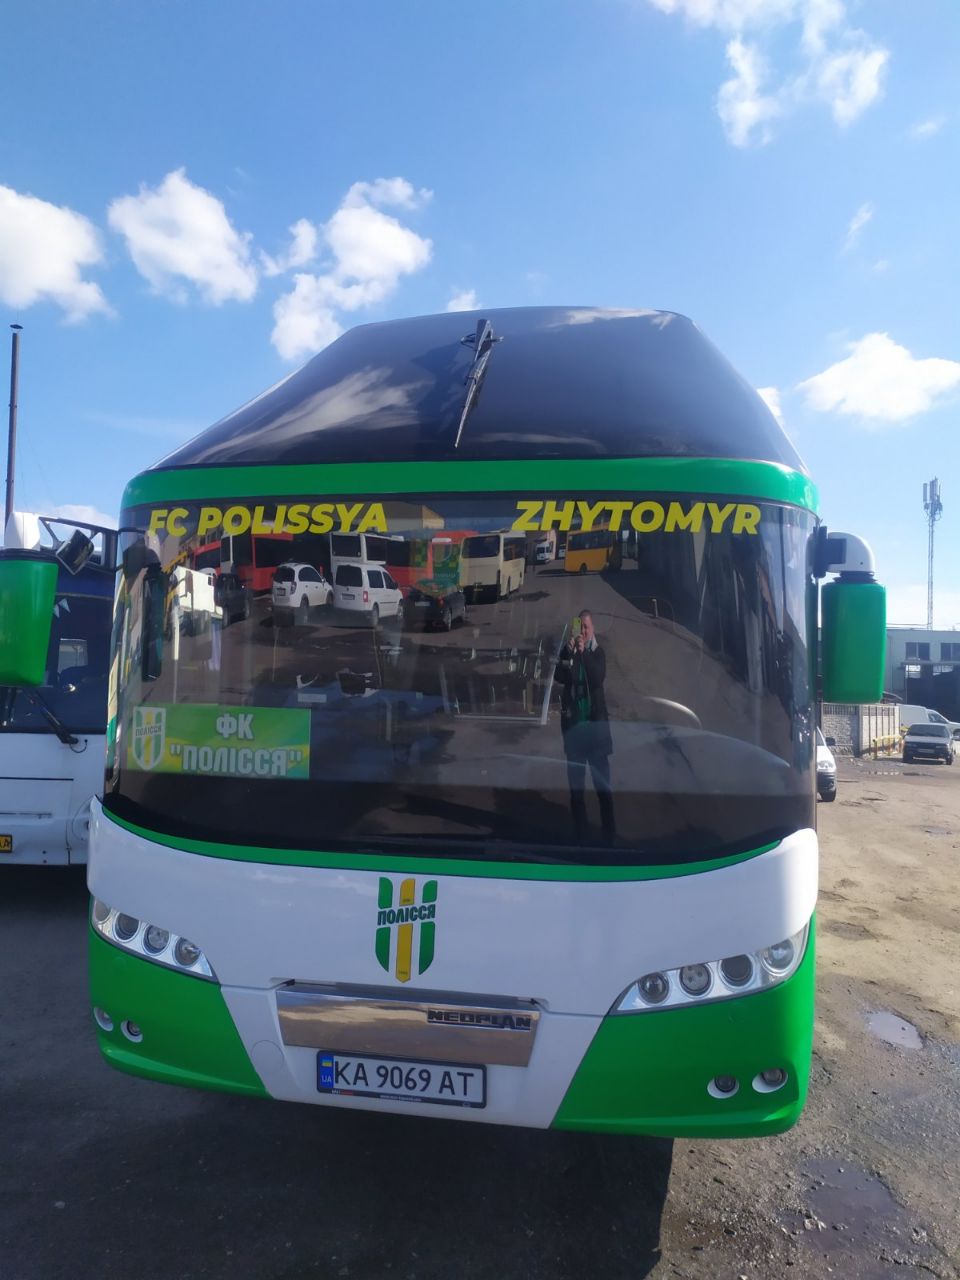 У Житомирі показали новий клубний автобус ФК Полісся після брендування. ФОТО Изображение 2